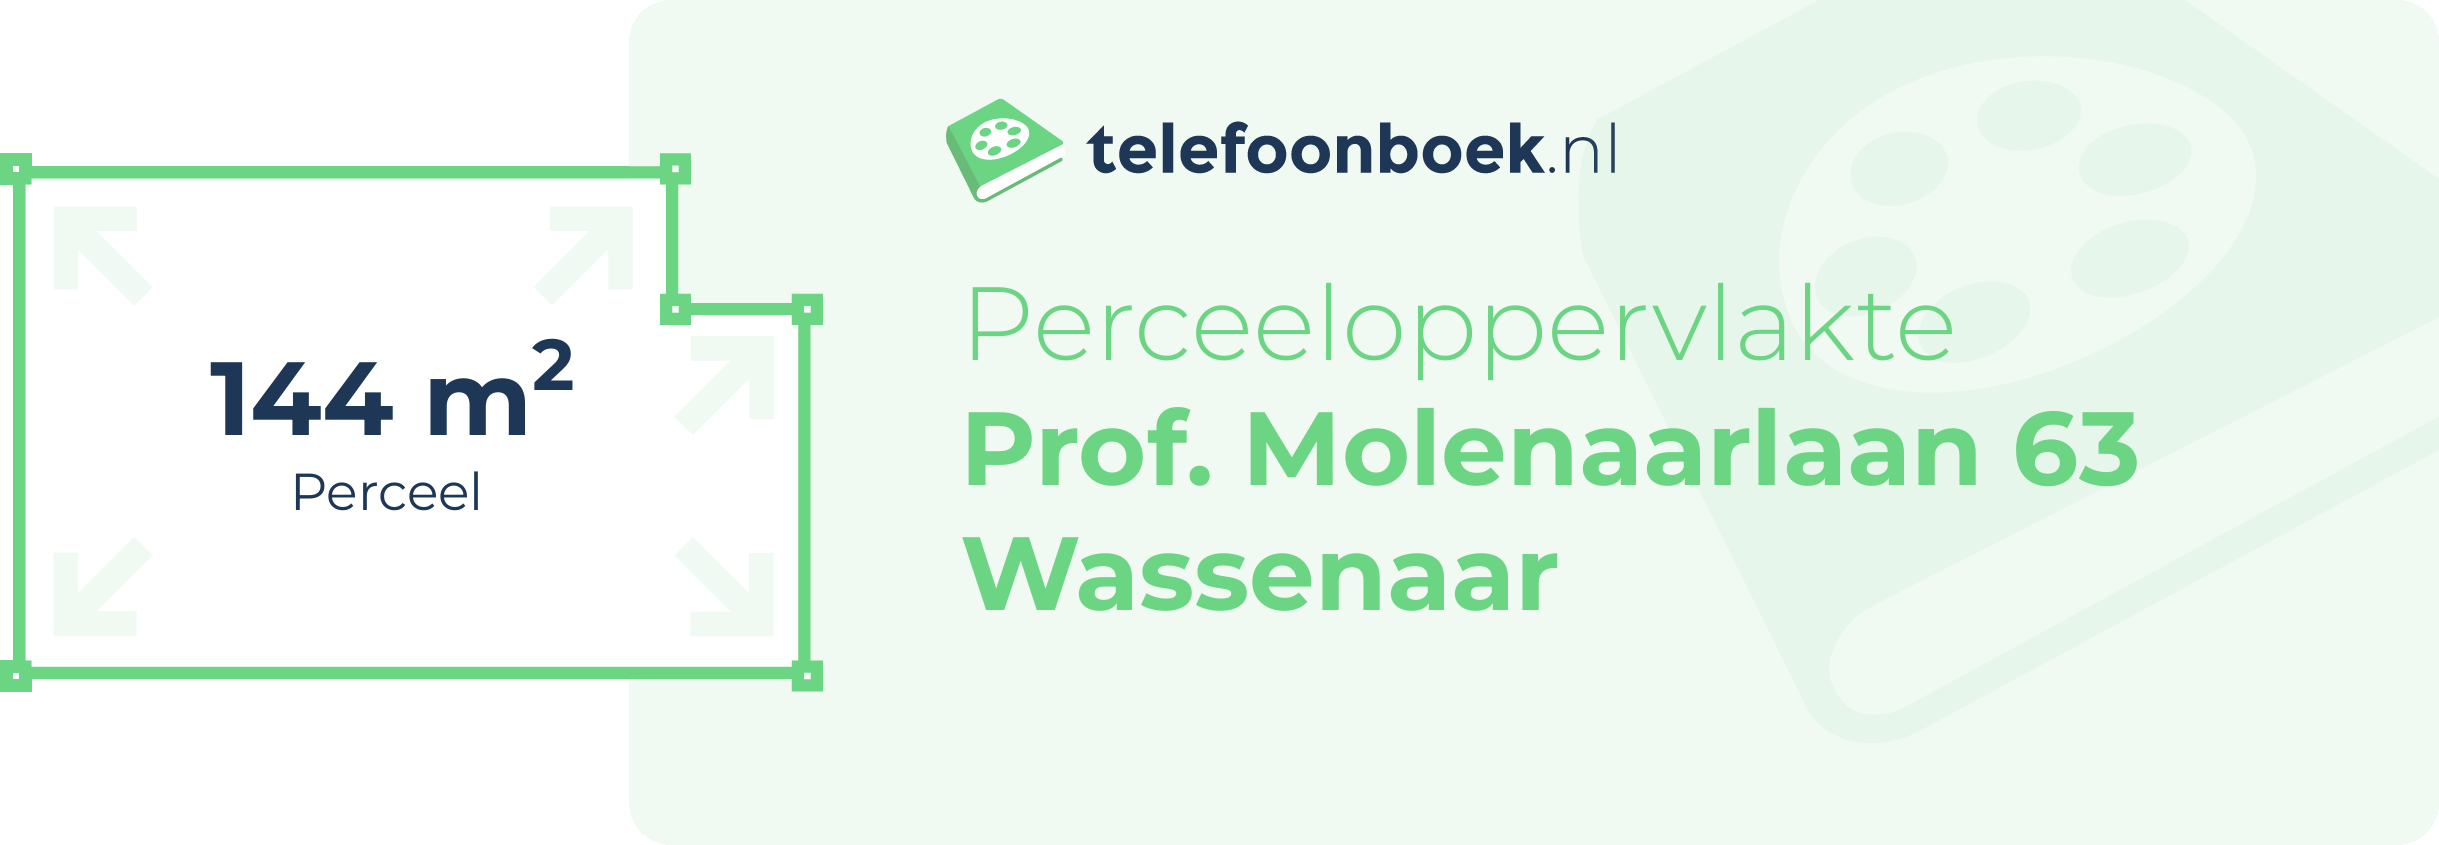 Perceeloppervlakte Prof. Molenaarlaan 63 Wassenaar